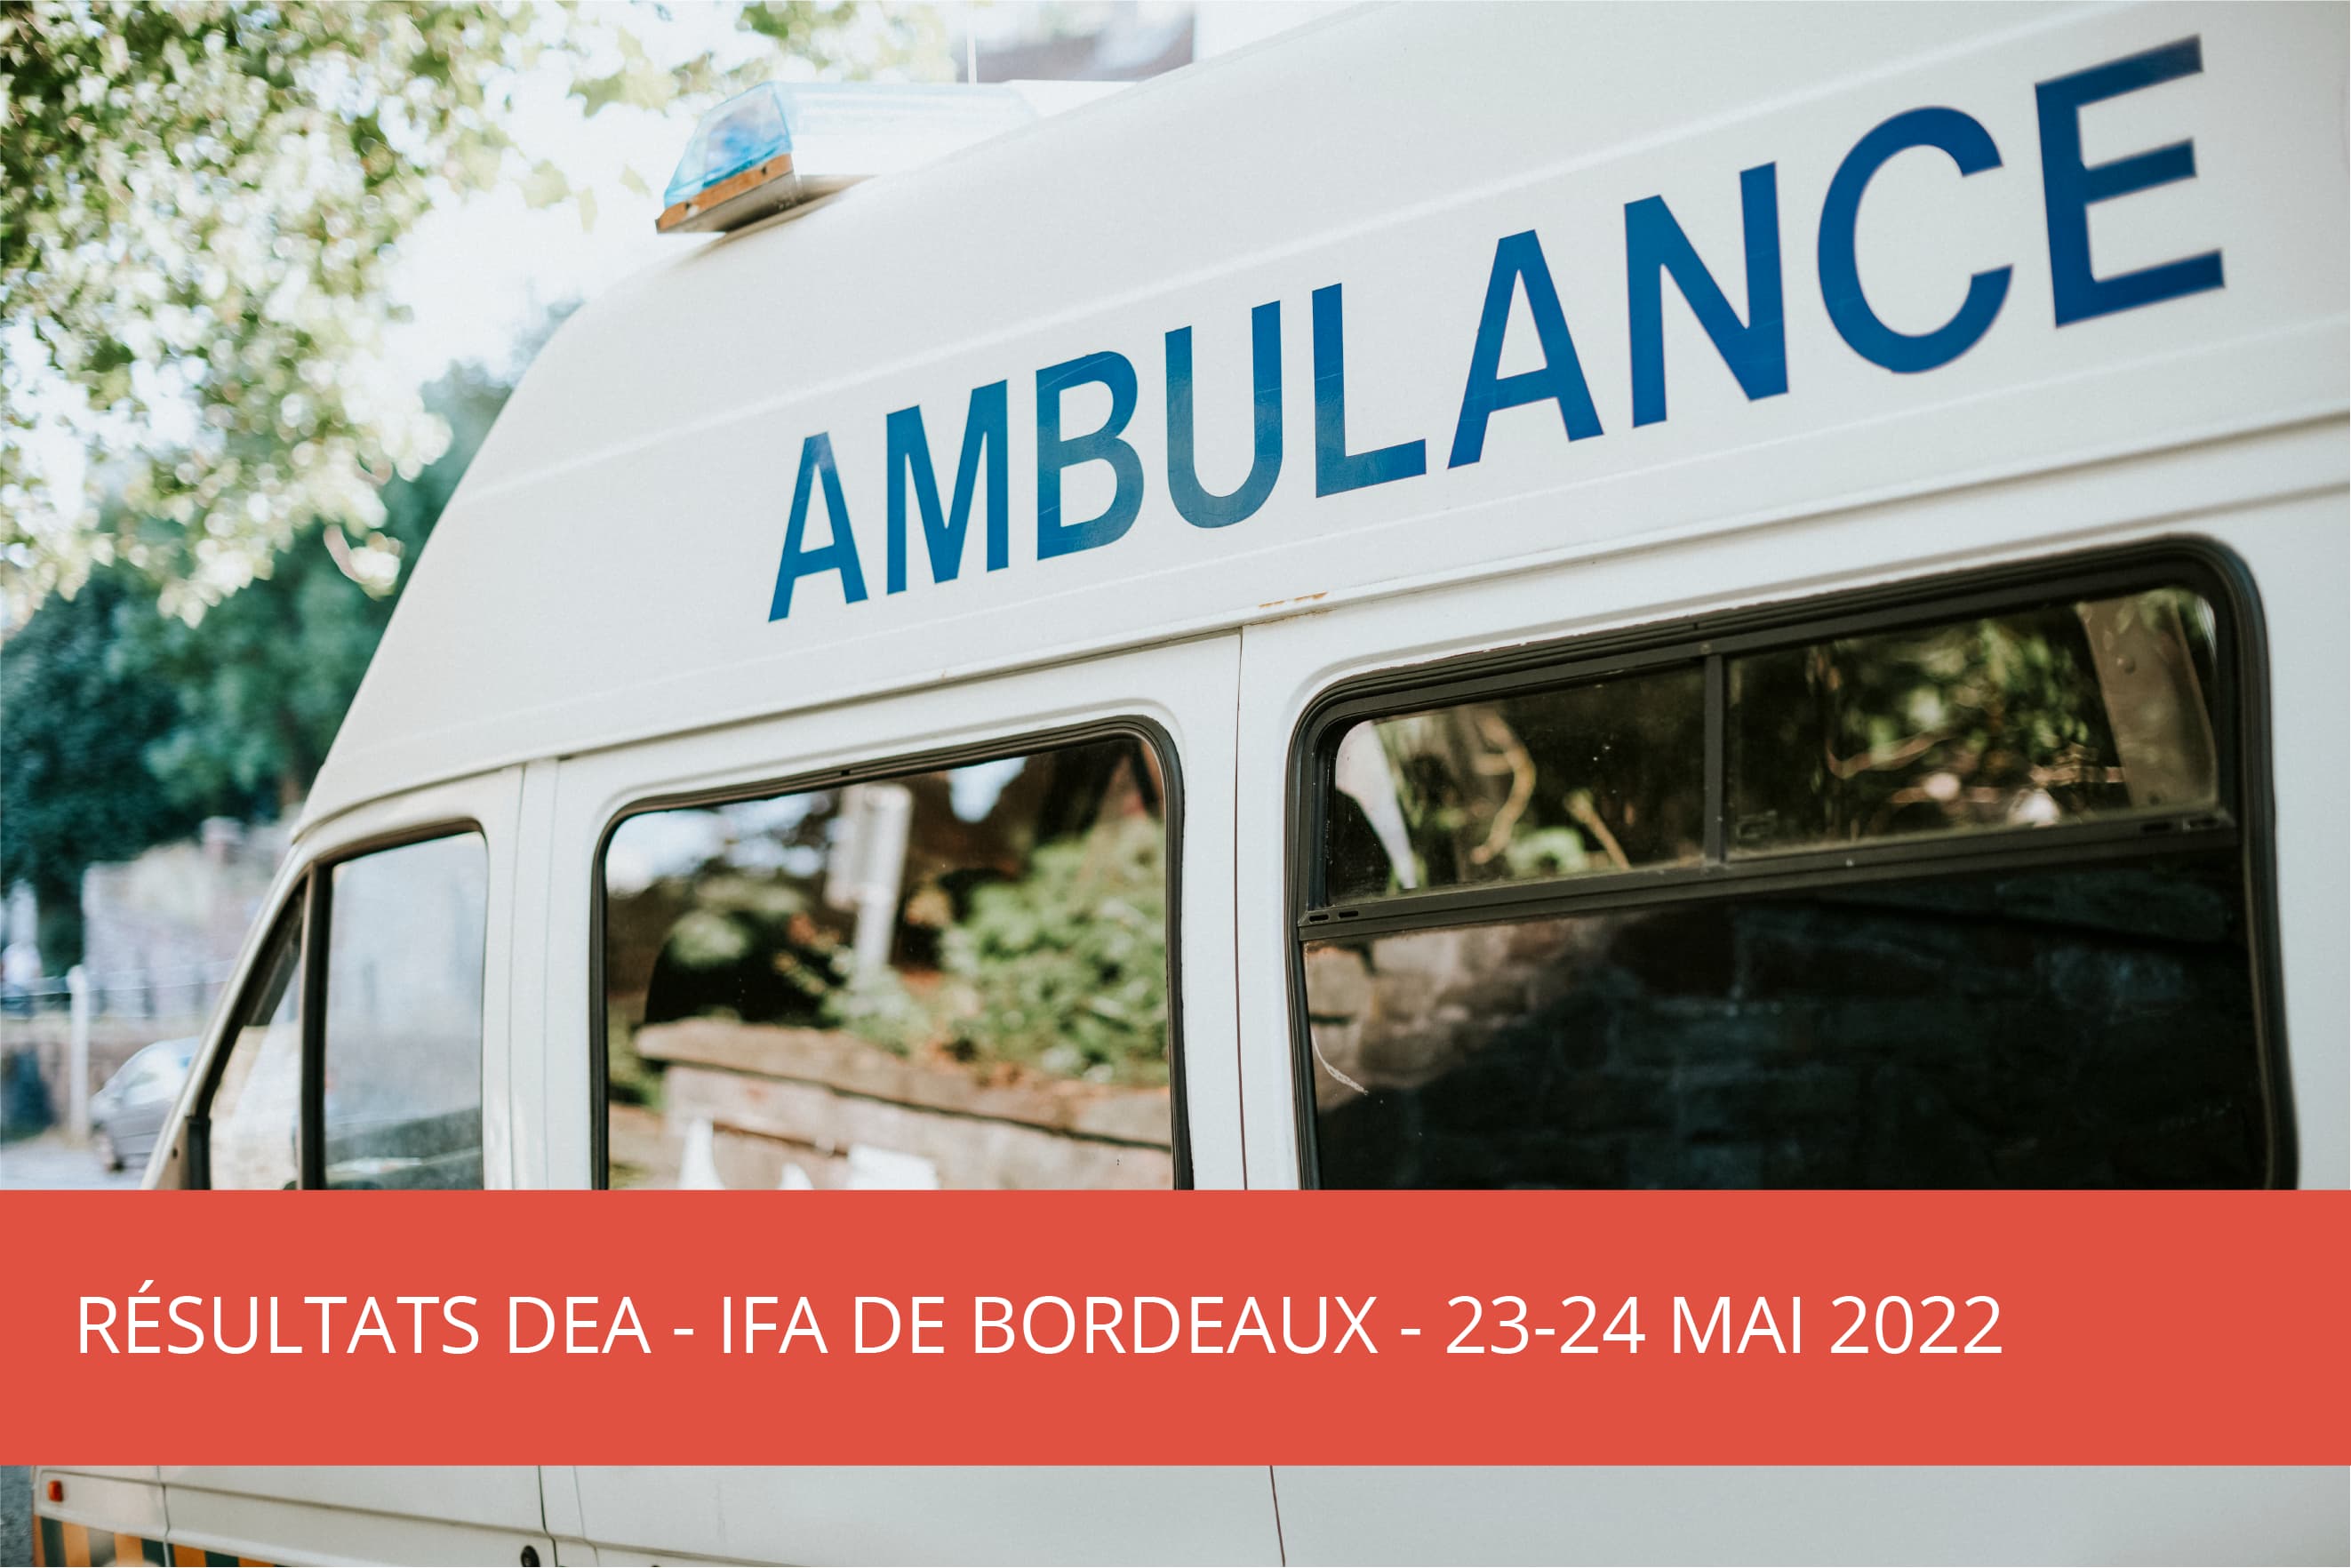 IFA Bordeaux : Formation du DEA – Résultat d’admission du 23-24 Mai 2022